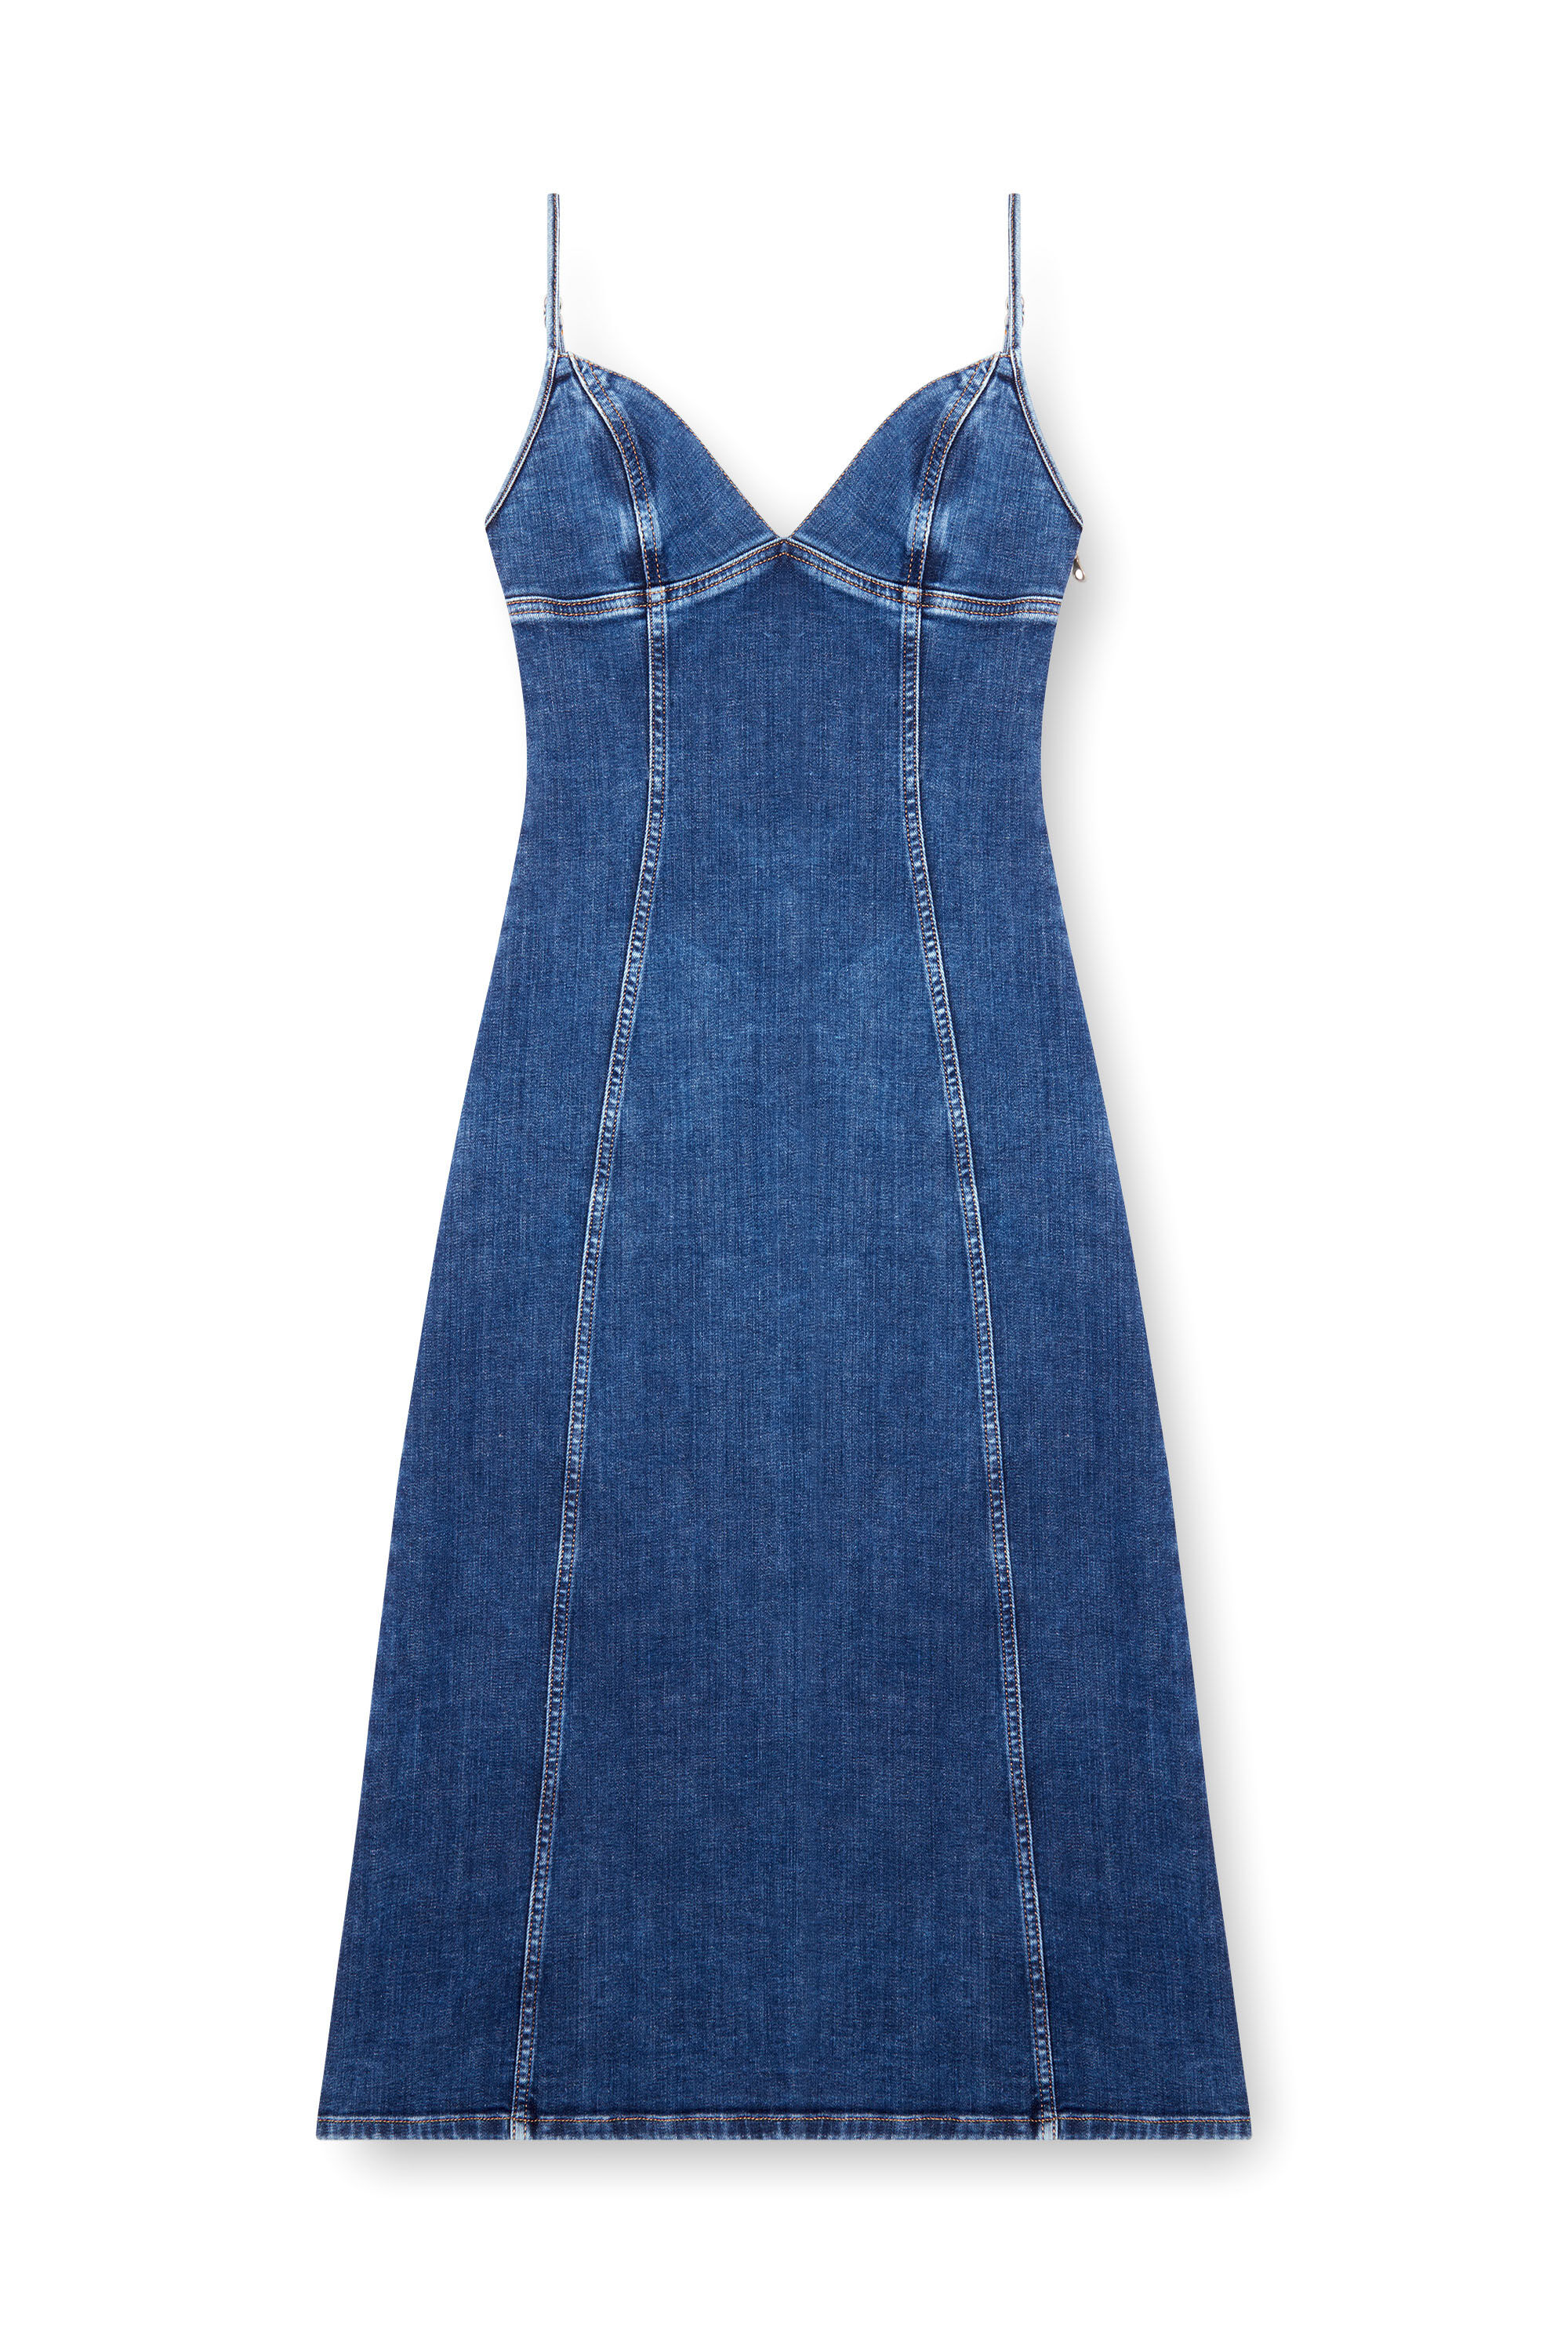 Diesel - DE-FULVY-DRESS-D, Mujer Vestido midi de tirantes en denim in Azul marino - Image 2